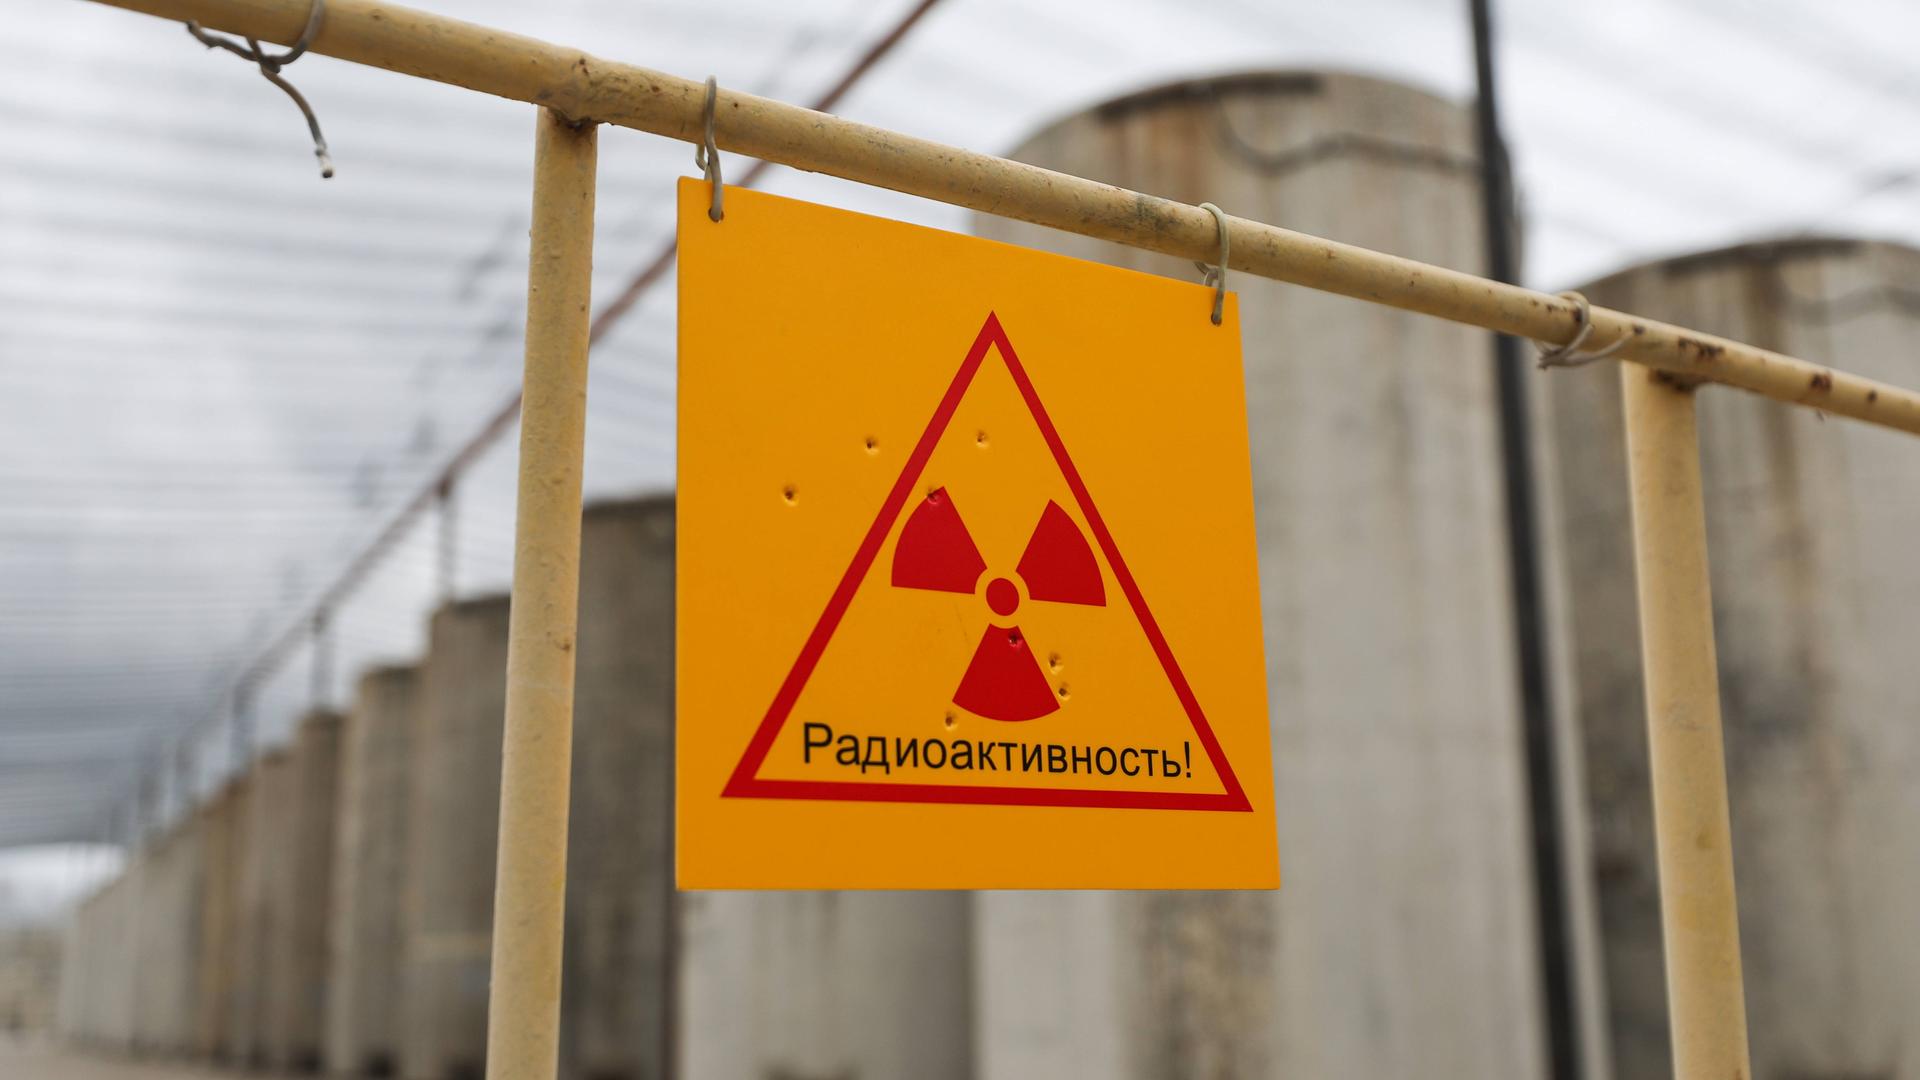 Ein gelbes Atomkraft-Warnschild mit roter Schrift vor dem Gelände des ukrainischen Atomkraftwerks Saporischschja.